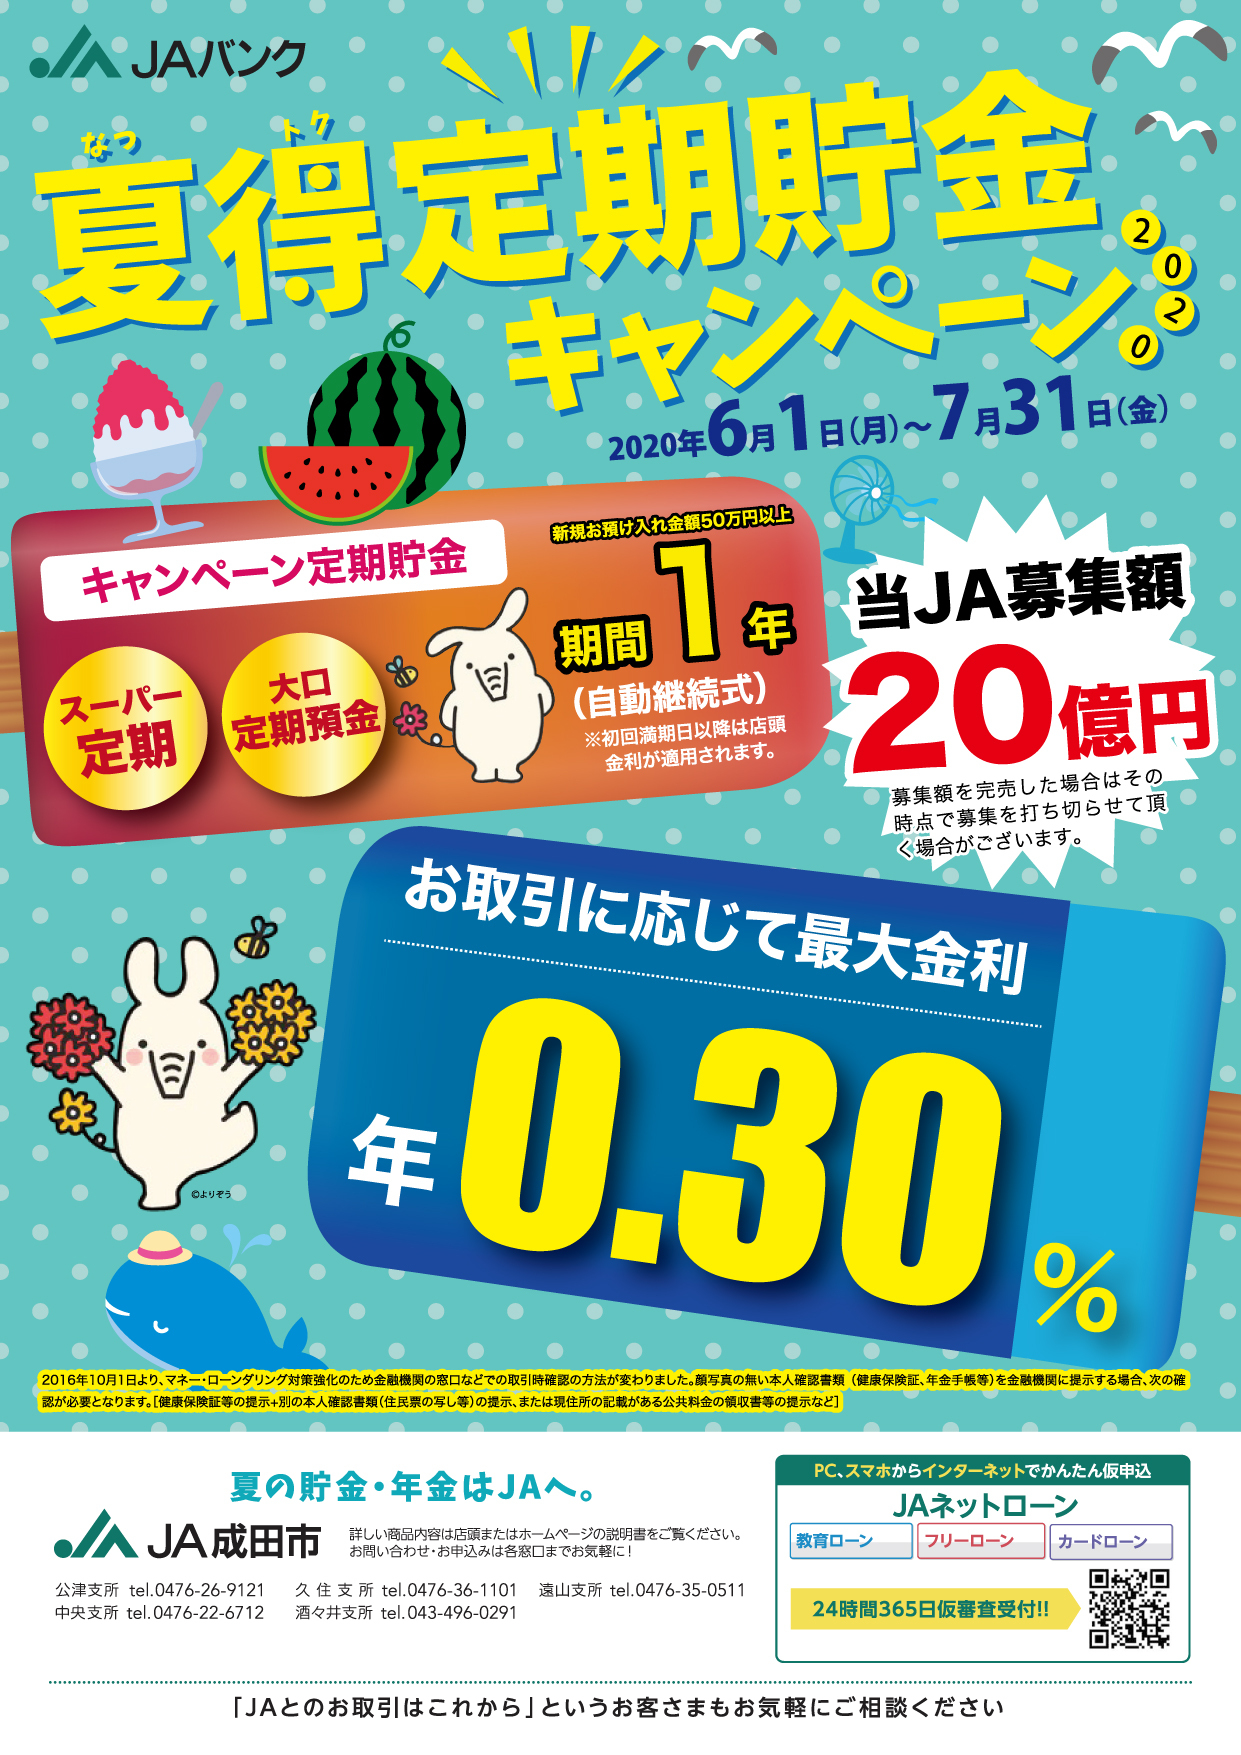 夏得定期貯金キャンペーン Ja成田市金融部のホームページ